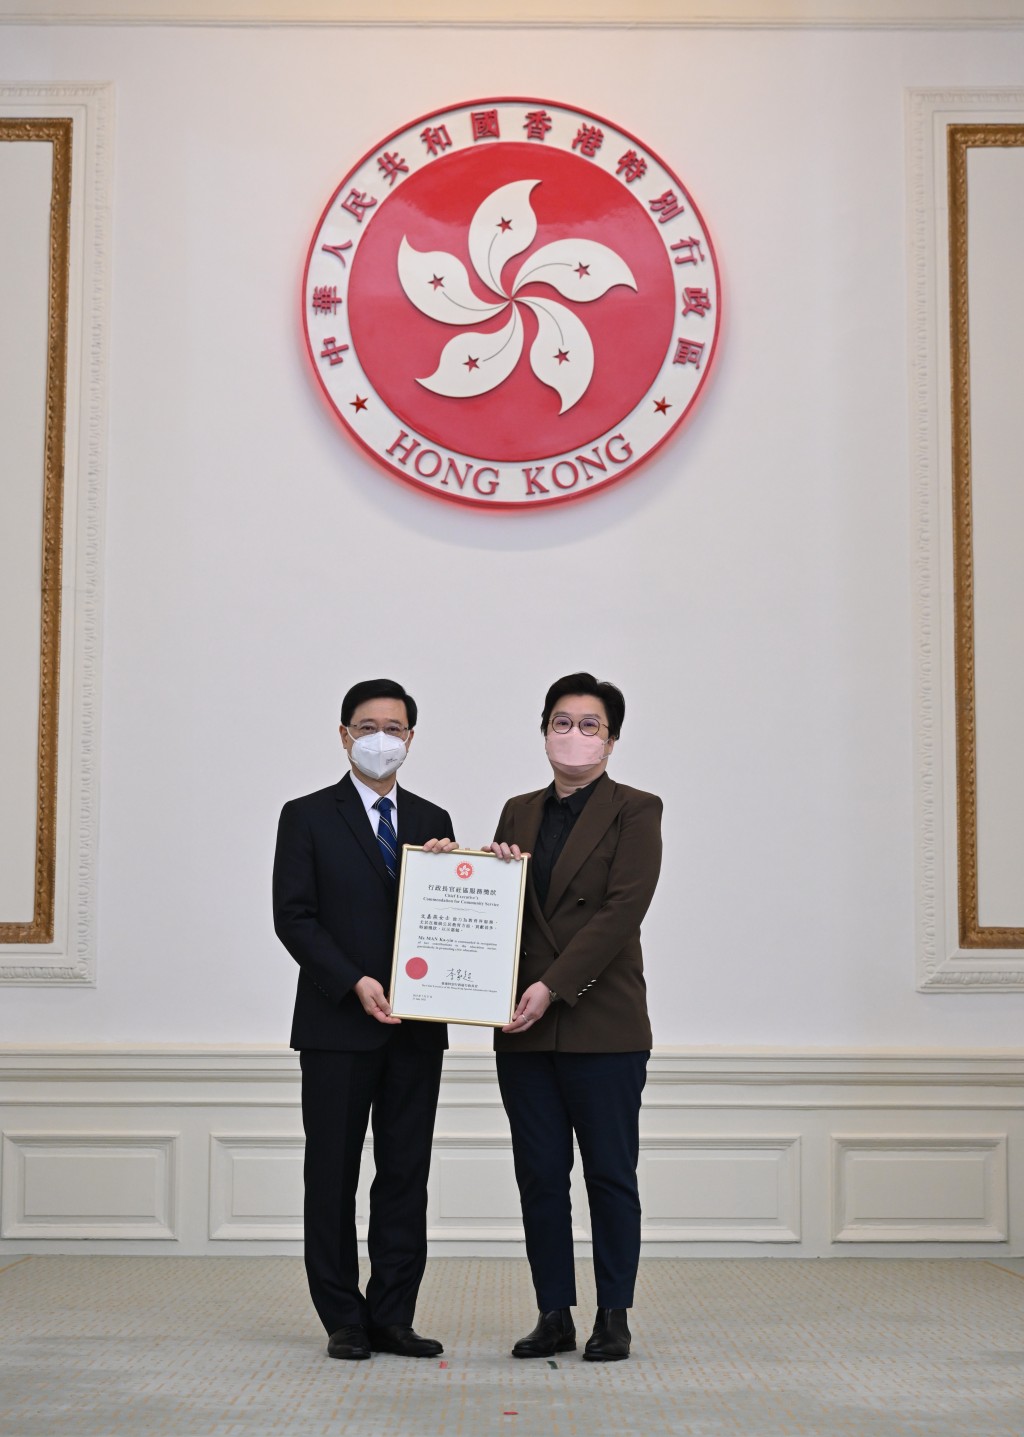 文嘉燕副校長獲香港特區政府頒發行政長官社區服務獎狀。